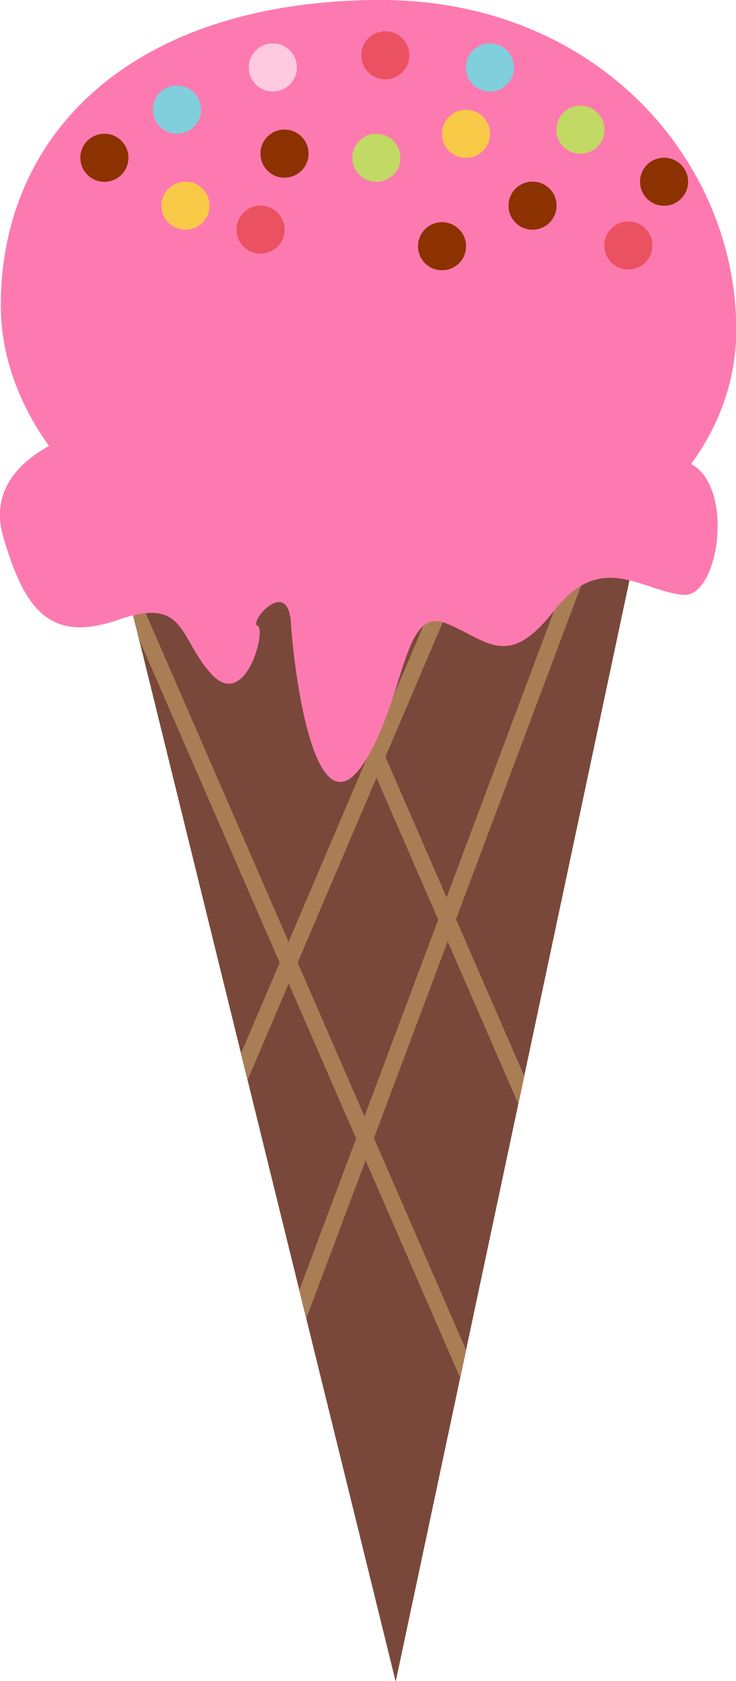 Ice Cream Cone Cartoon Images : Ice Cream Cone Gourmet Cartoon Png And ...